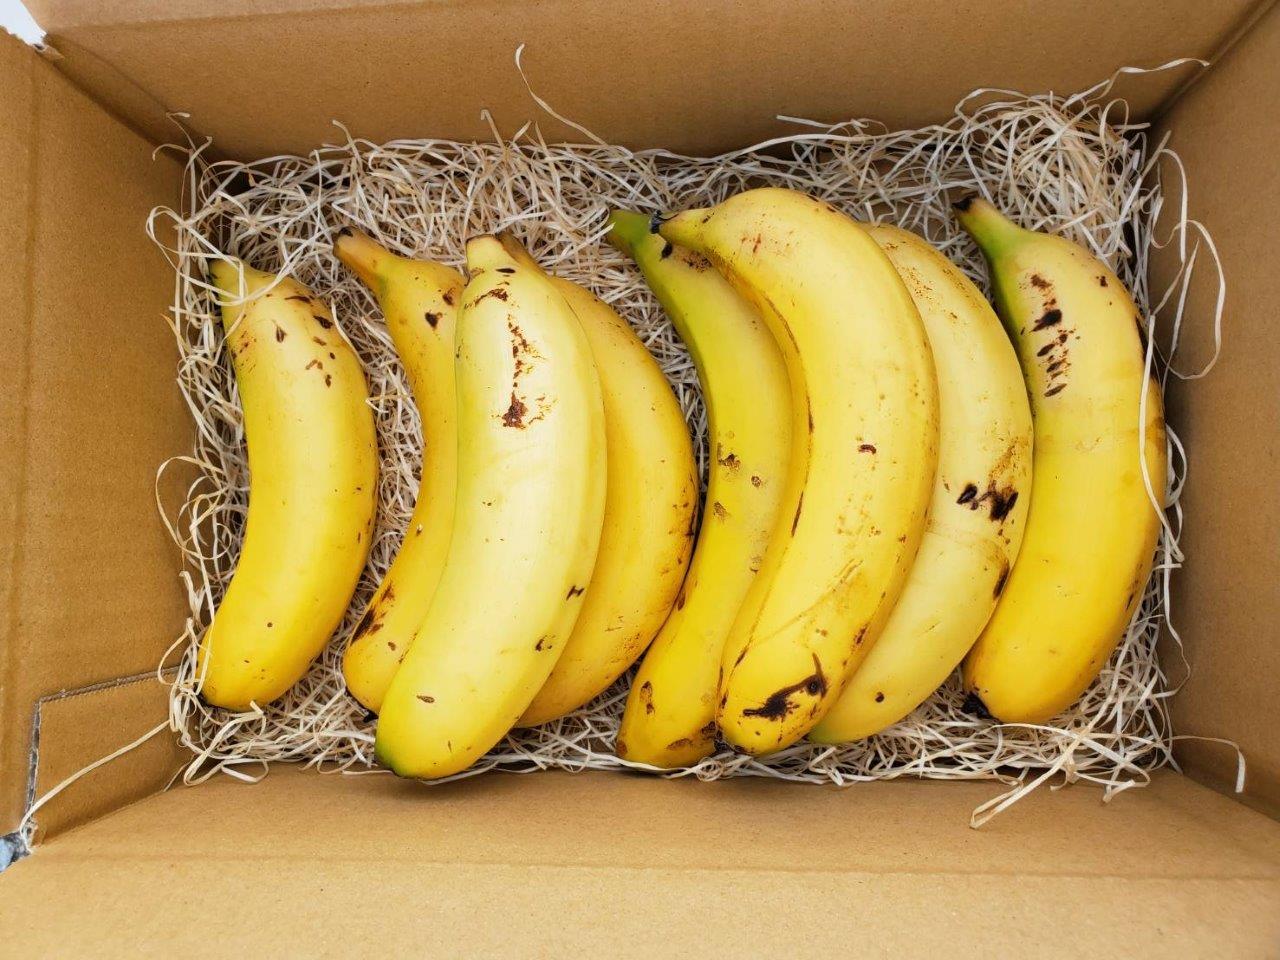 無農薬宮崎産バナナ「NEXT716」1kg詰め合わせ